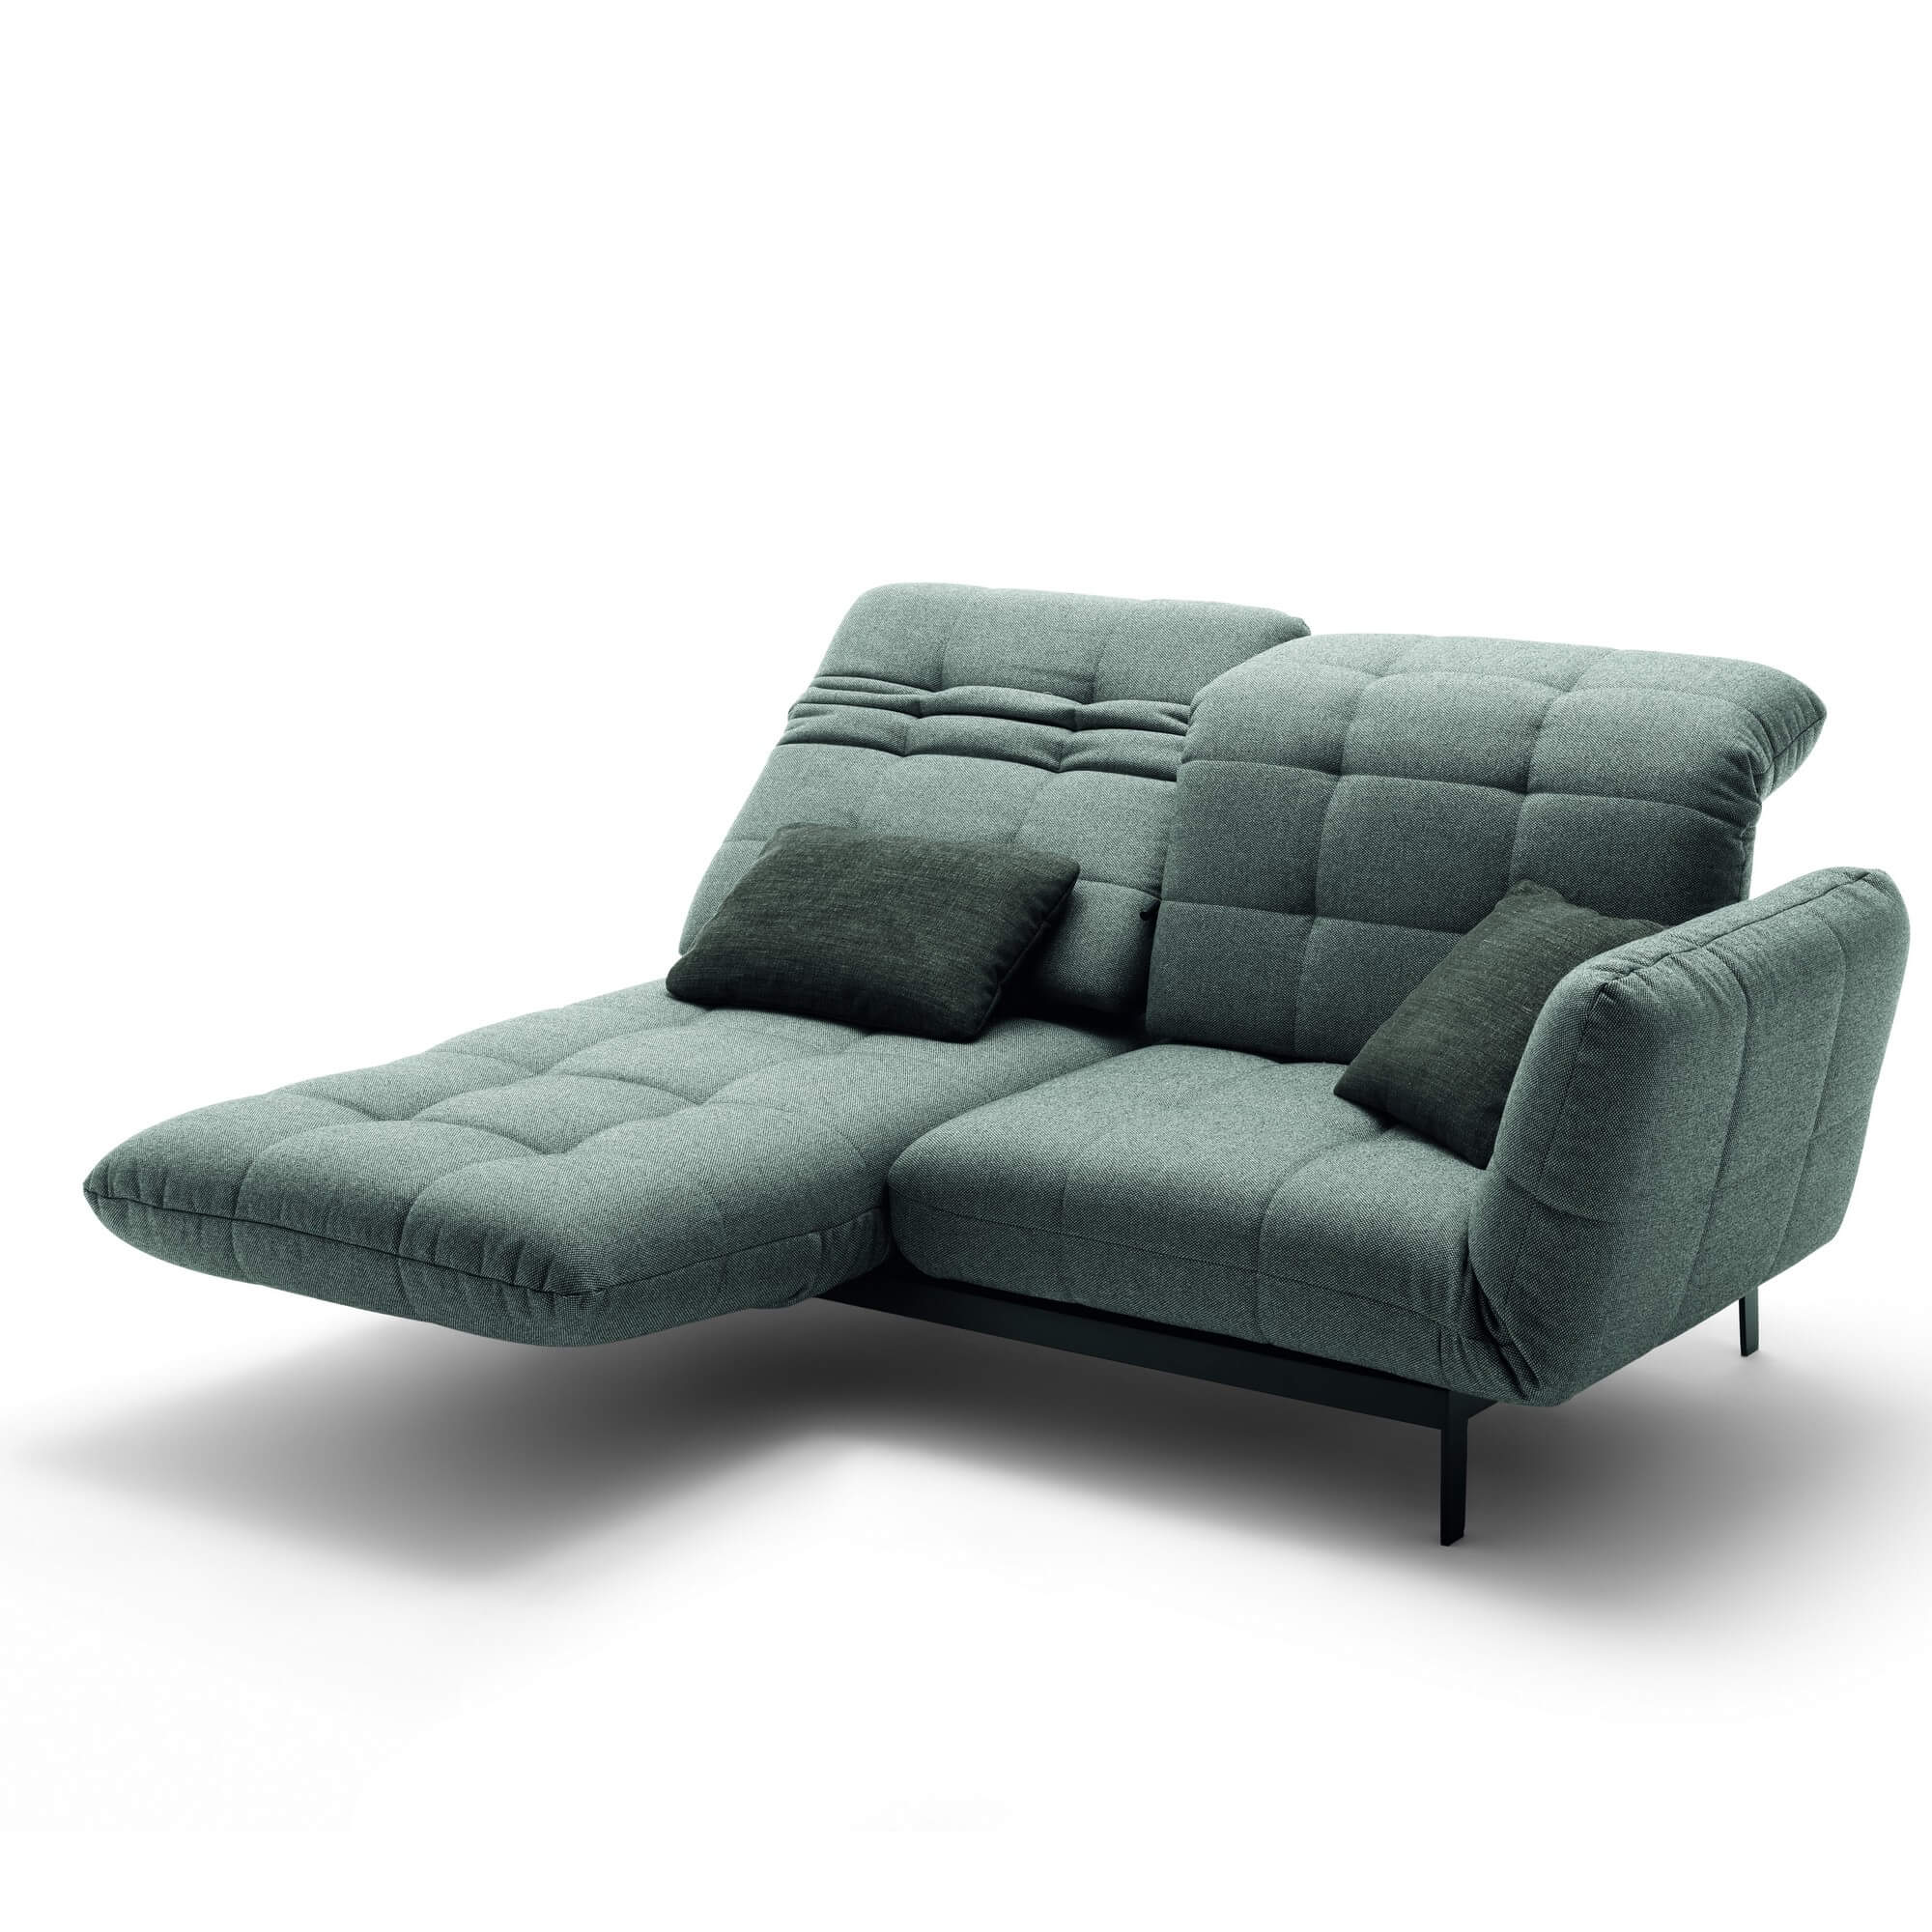 Дизайнерский диван с высокой спинкой Rolf Benz Agio из Германии